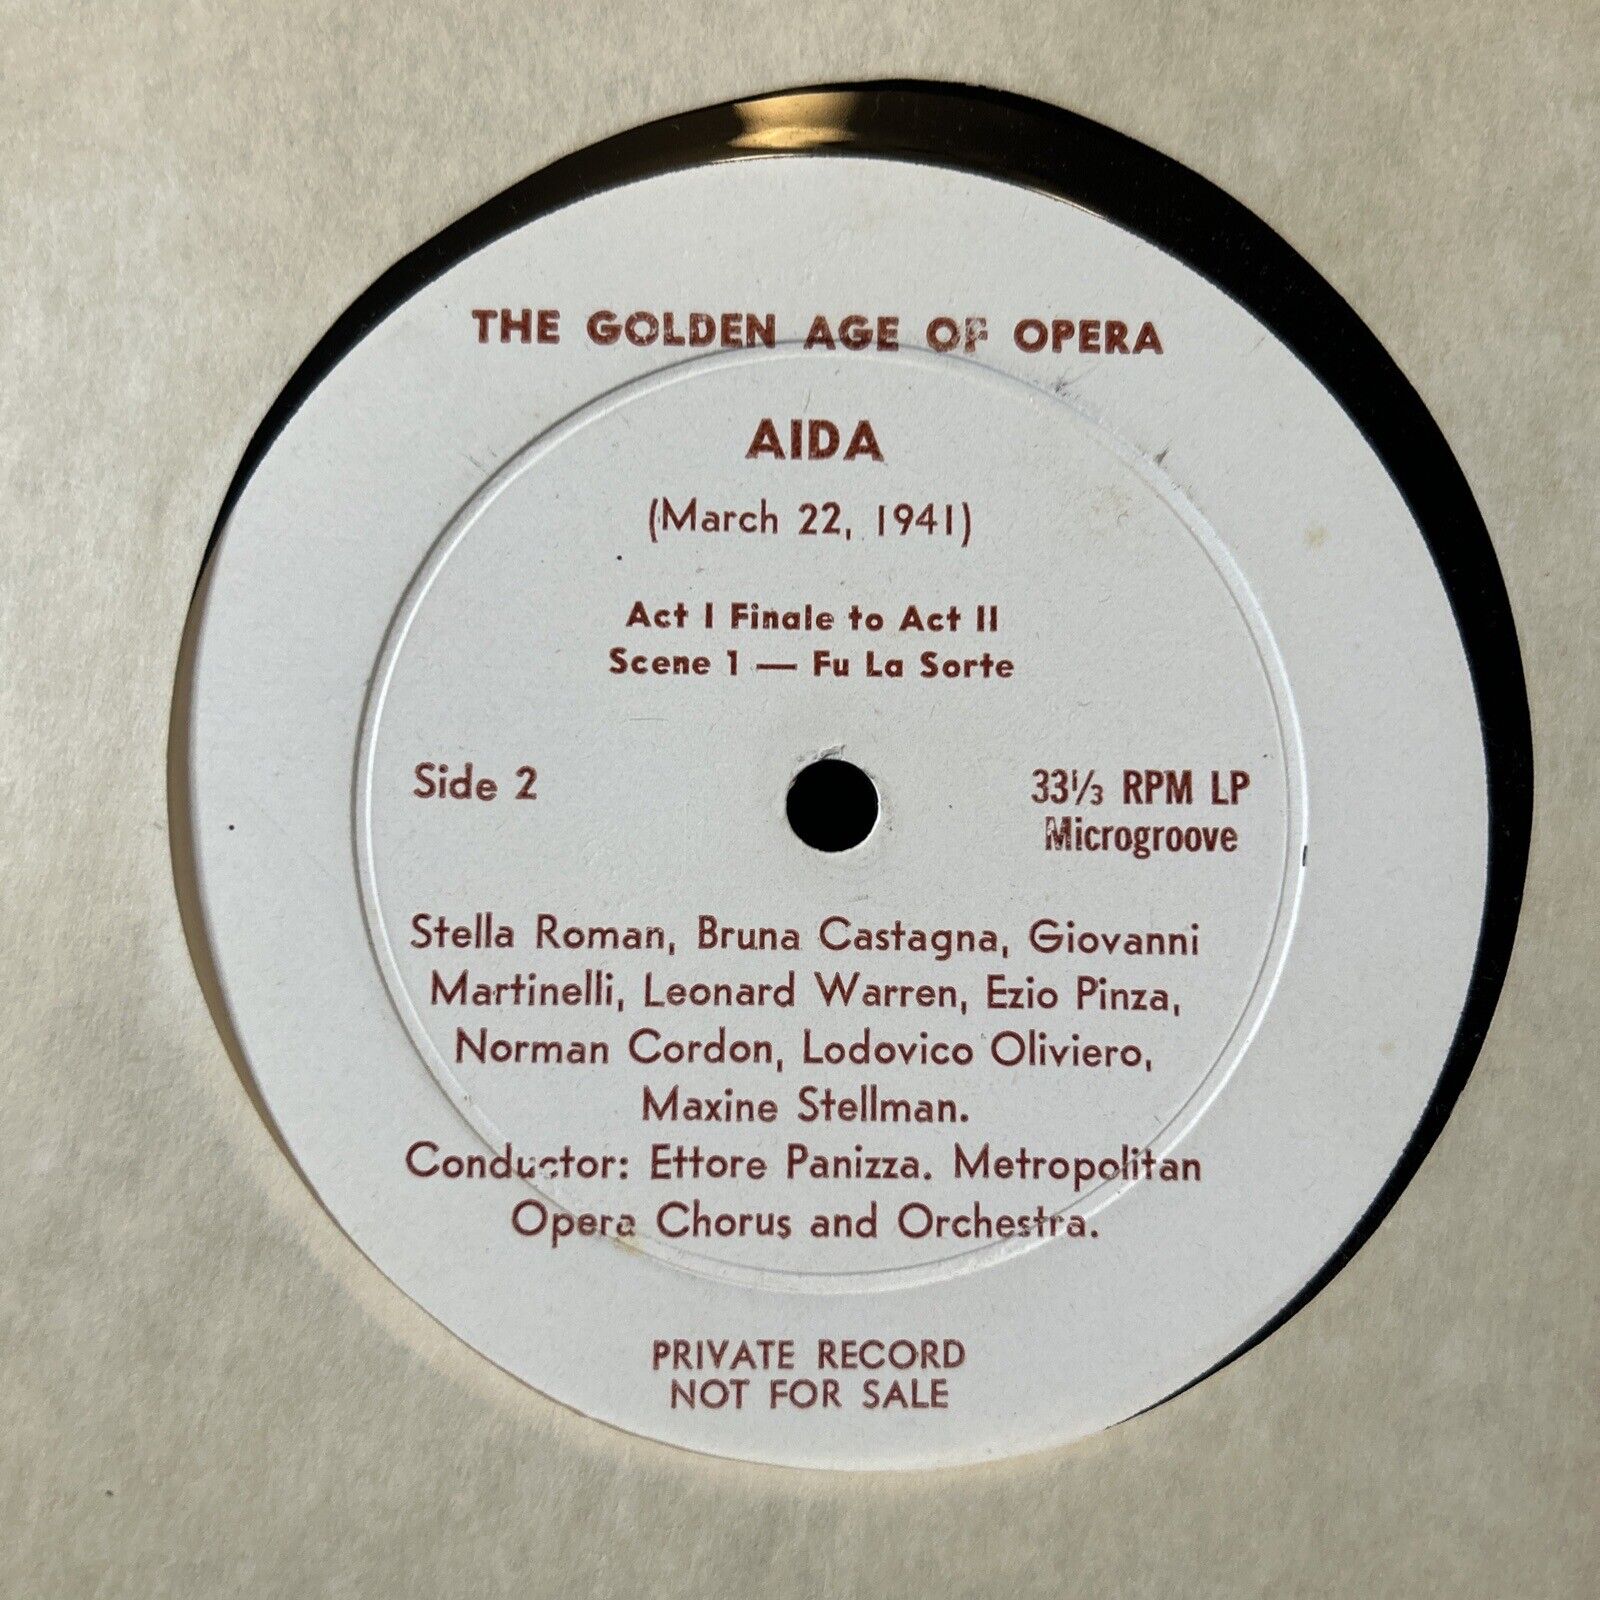 AIDA 33 1/3 RPM LP MICROGROOVE THE GOLDEN AGE OF OPERA PRIVATE RARE VTG #9